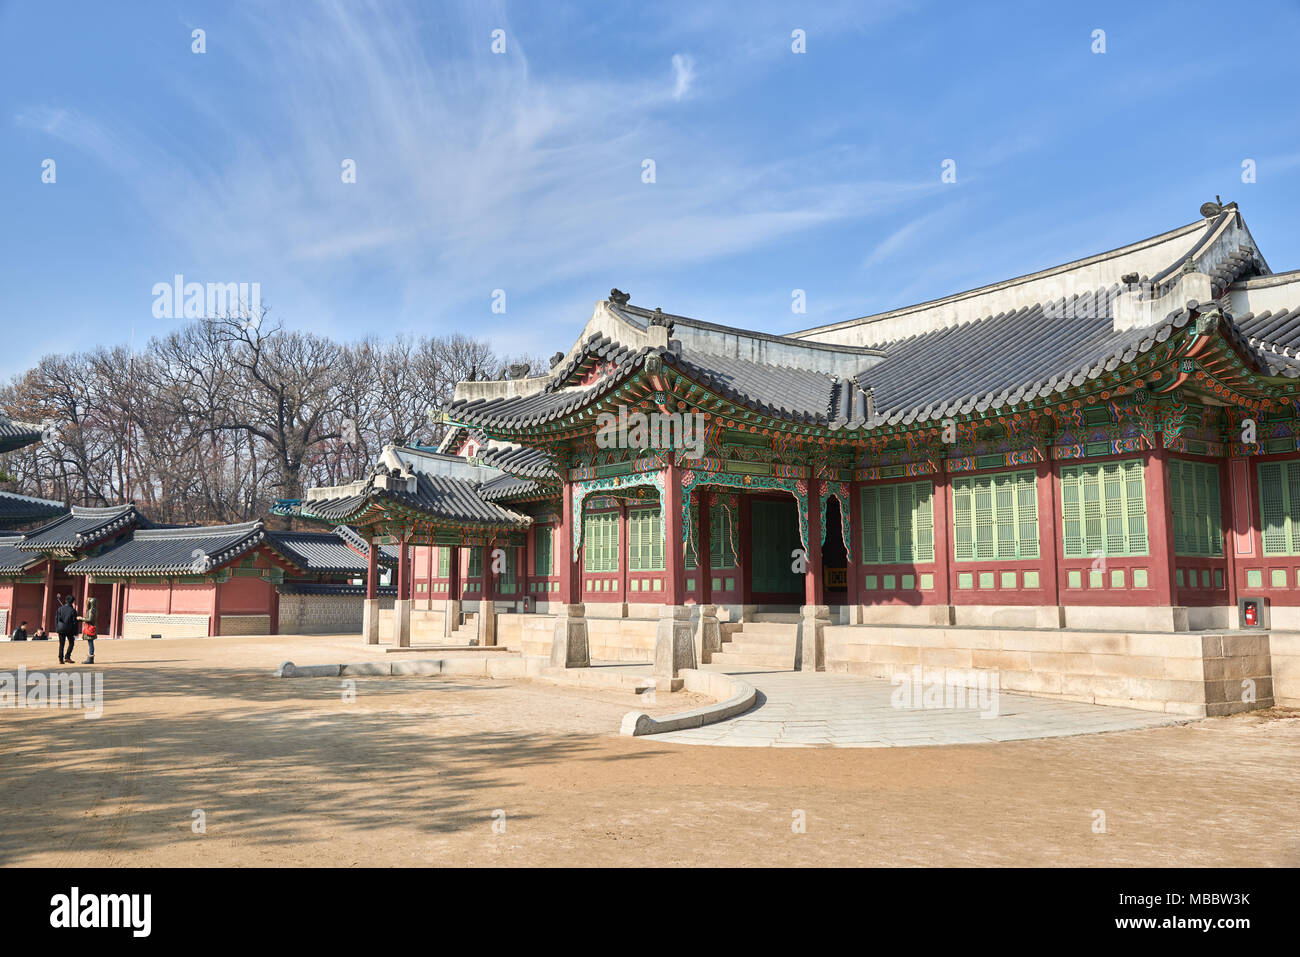 Seoul, Corea del Sud - 9 Dicembre 2015: Ingresso di Huijeongdang in Changdeokgung. Changdeokgung è un palazzo costruito come un palazzo secondario di dynast Joseon Foto Stock